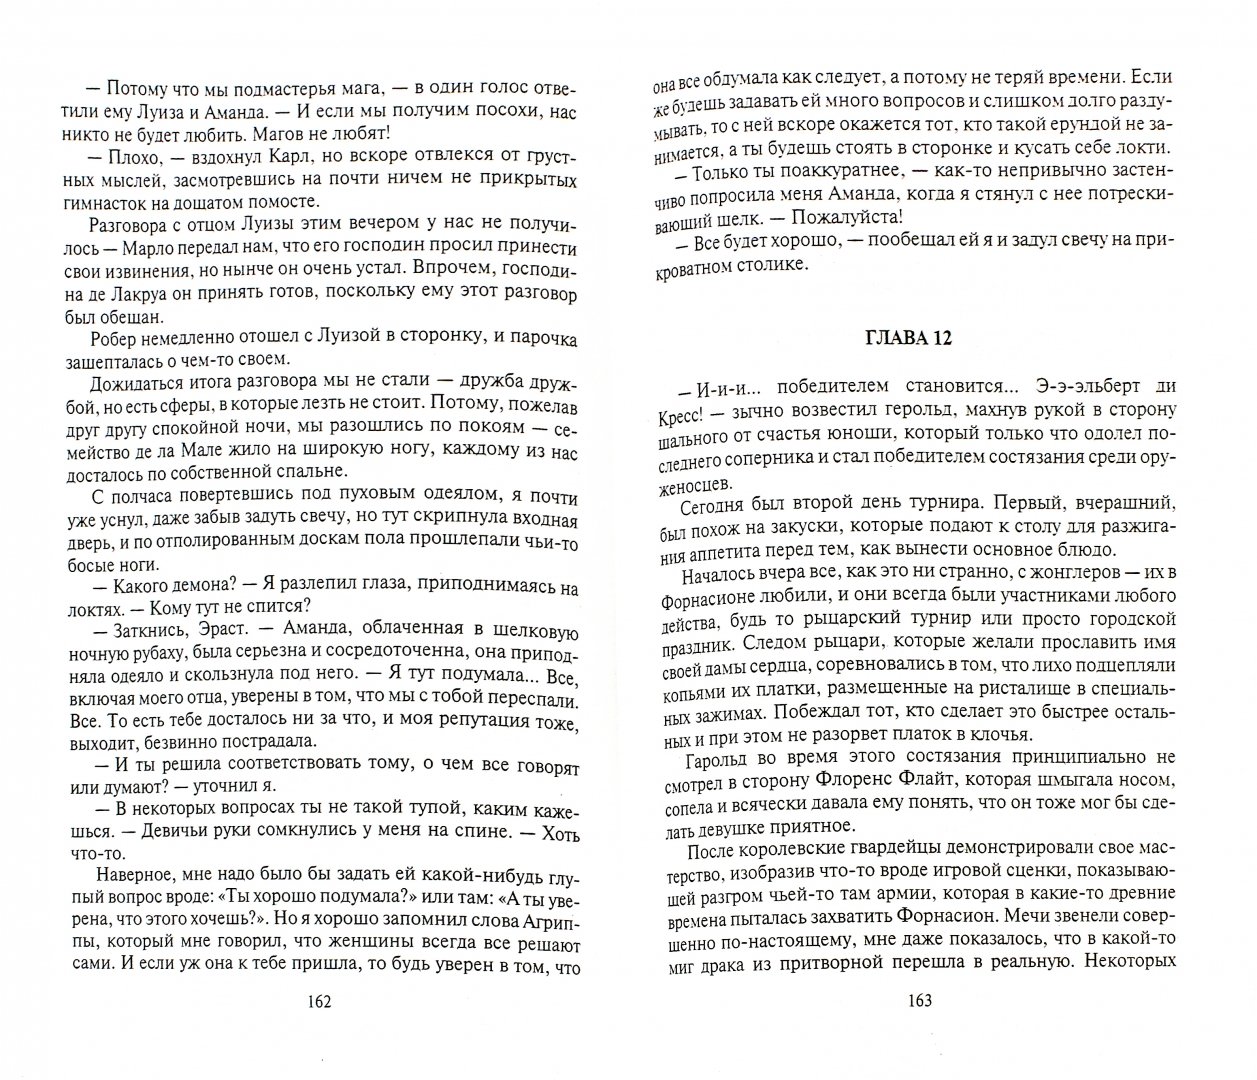 Иллюстрация 1 из 6 для Гробницы пяти магов - Андрей Васильев | Лабиринт - книги. Источник: Лабиринт